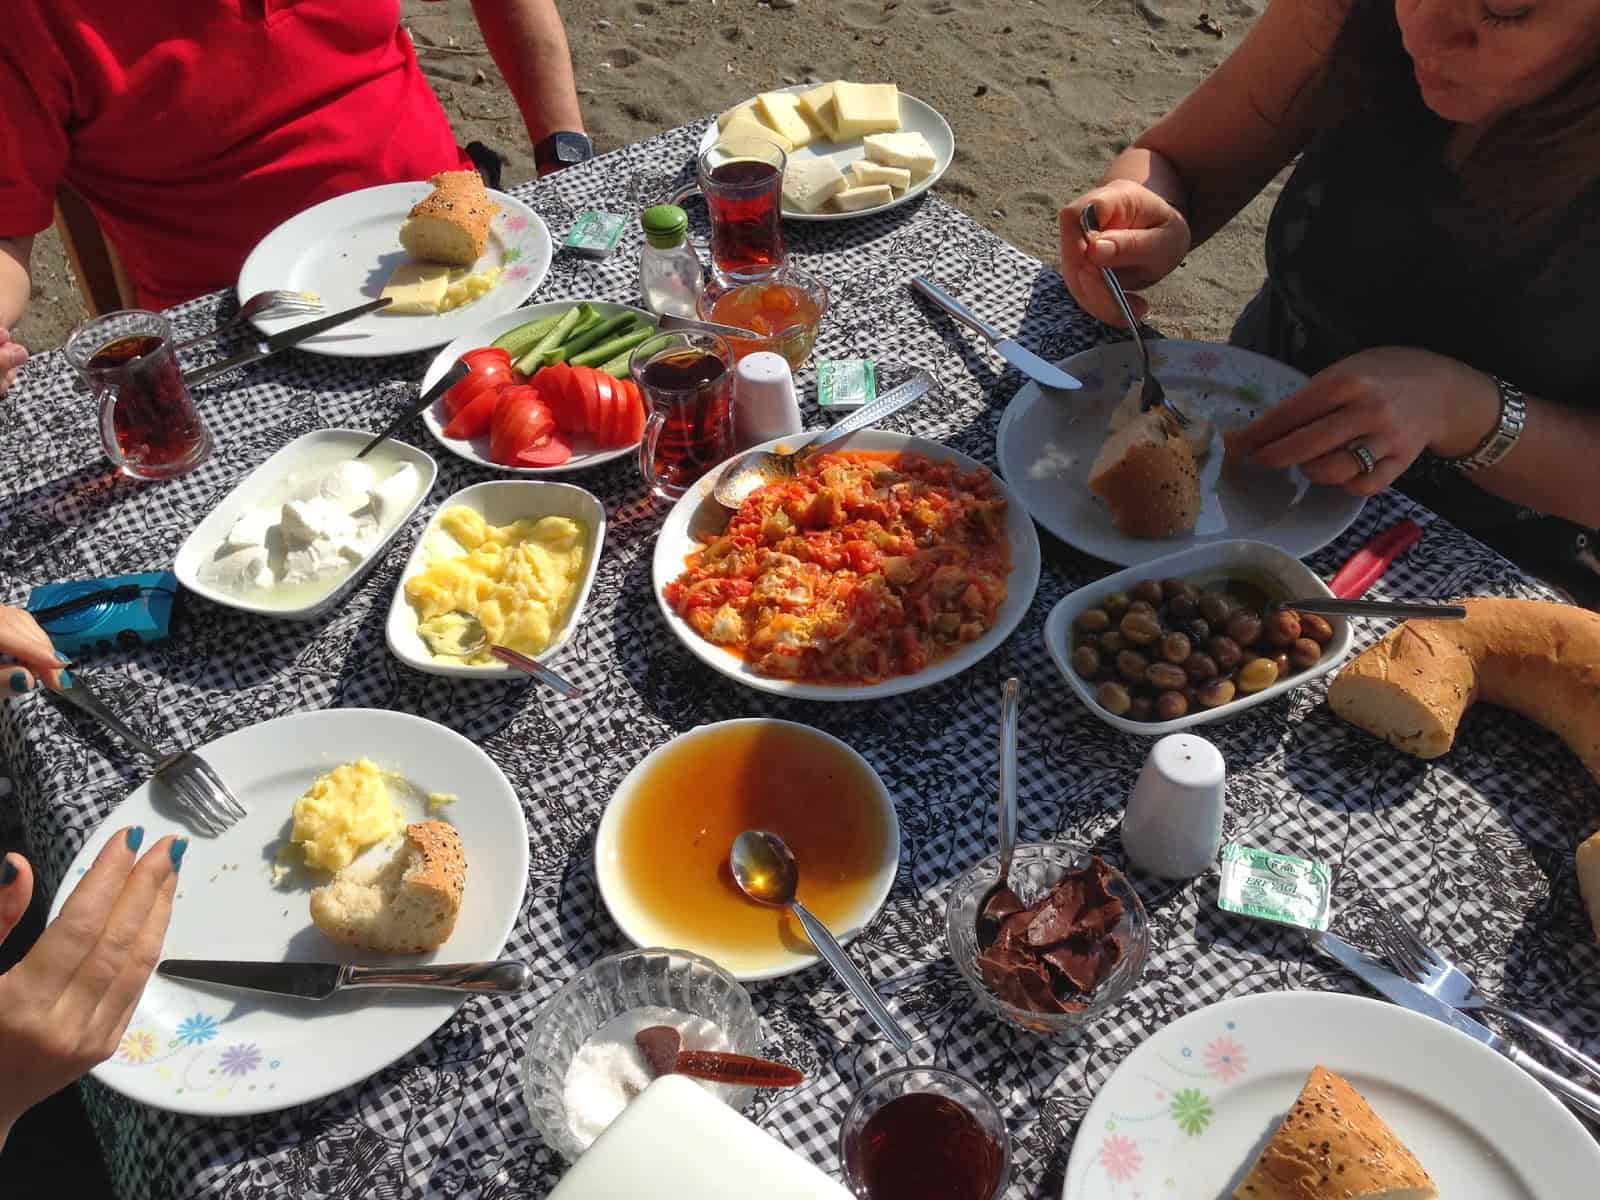 Breakfast on the beach at Ovabükü, Datça, Turkey